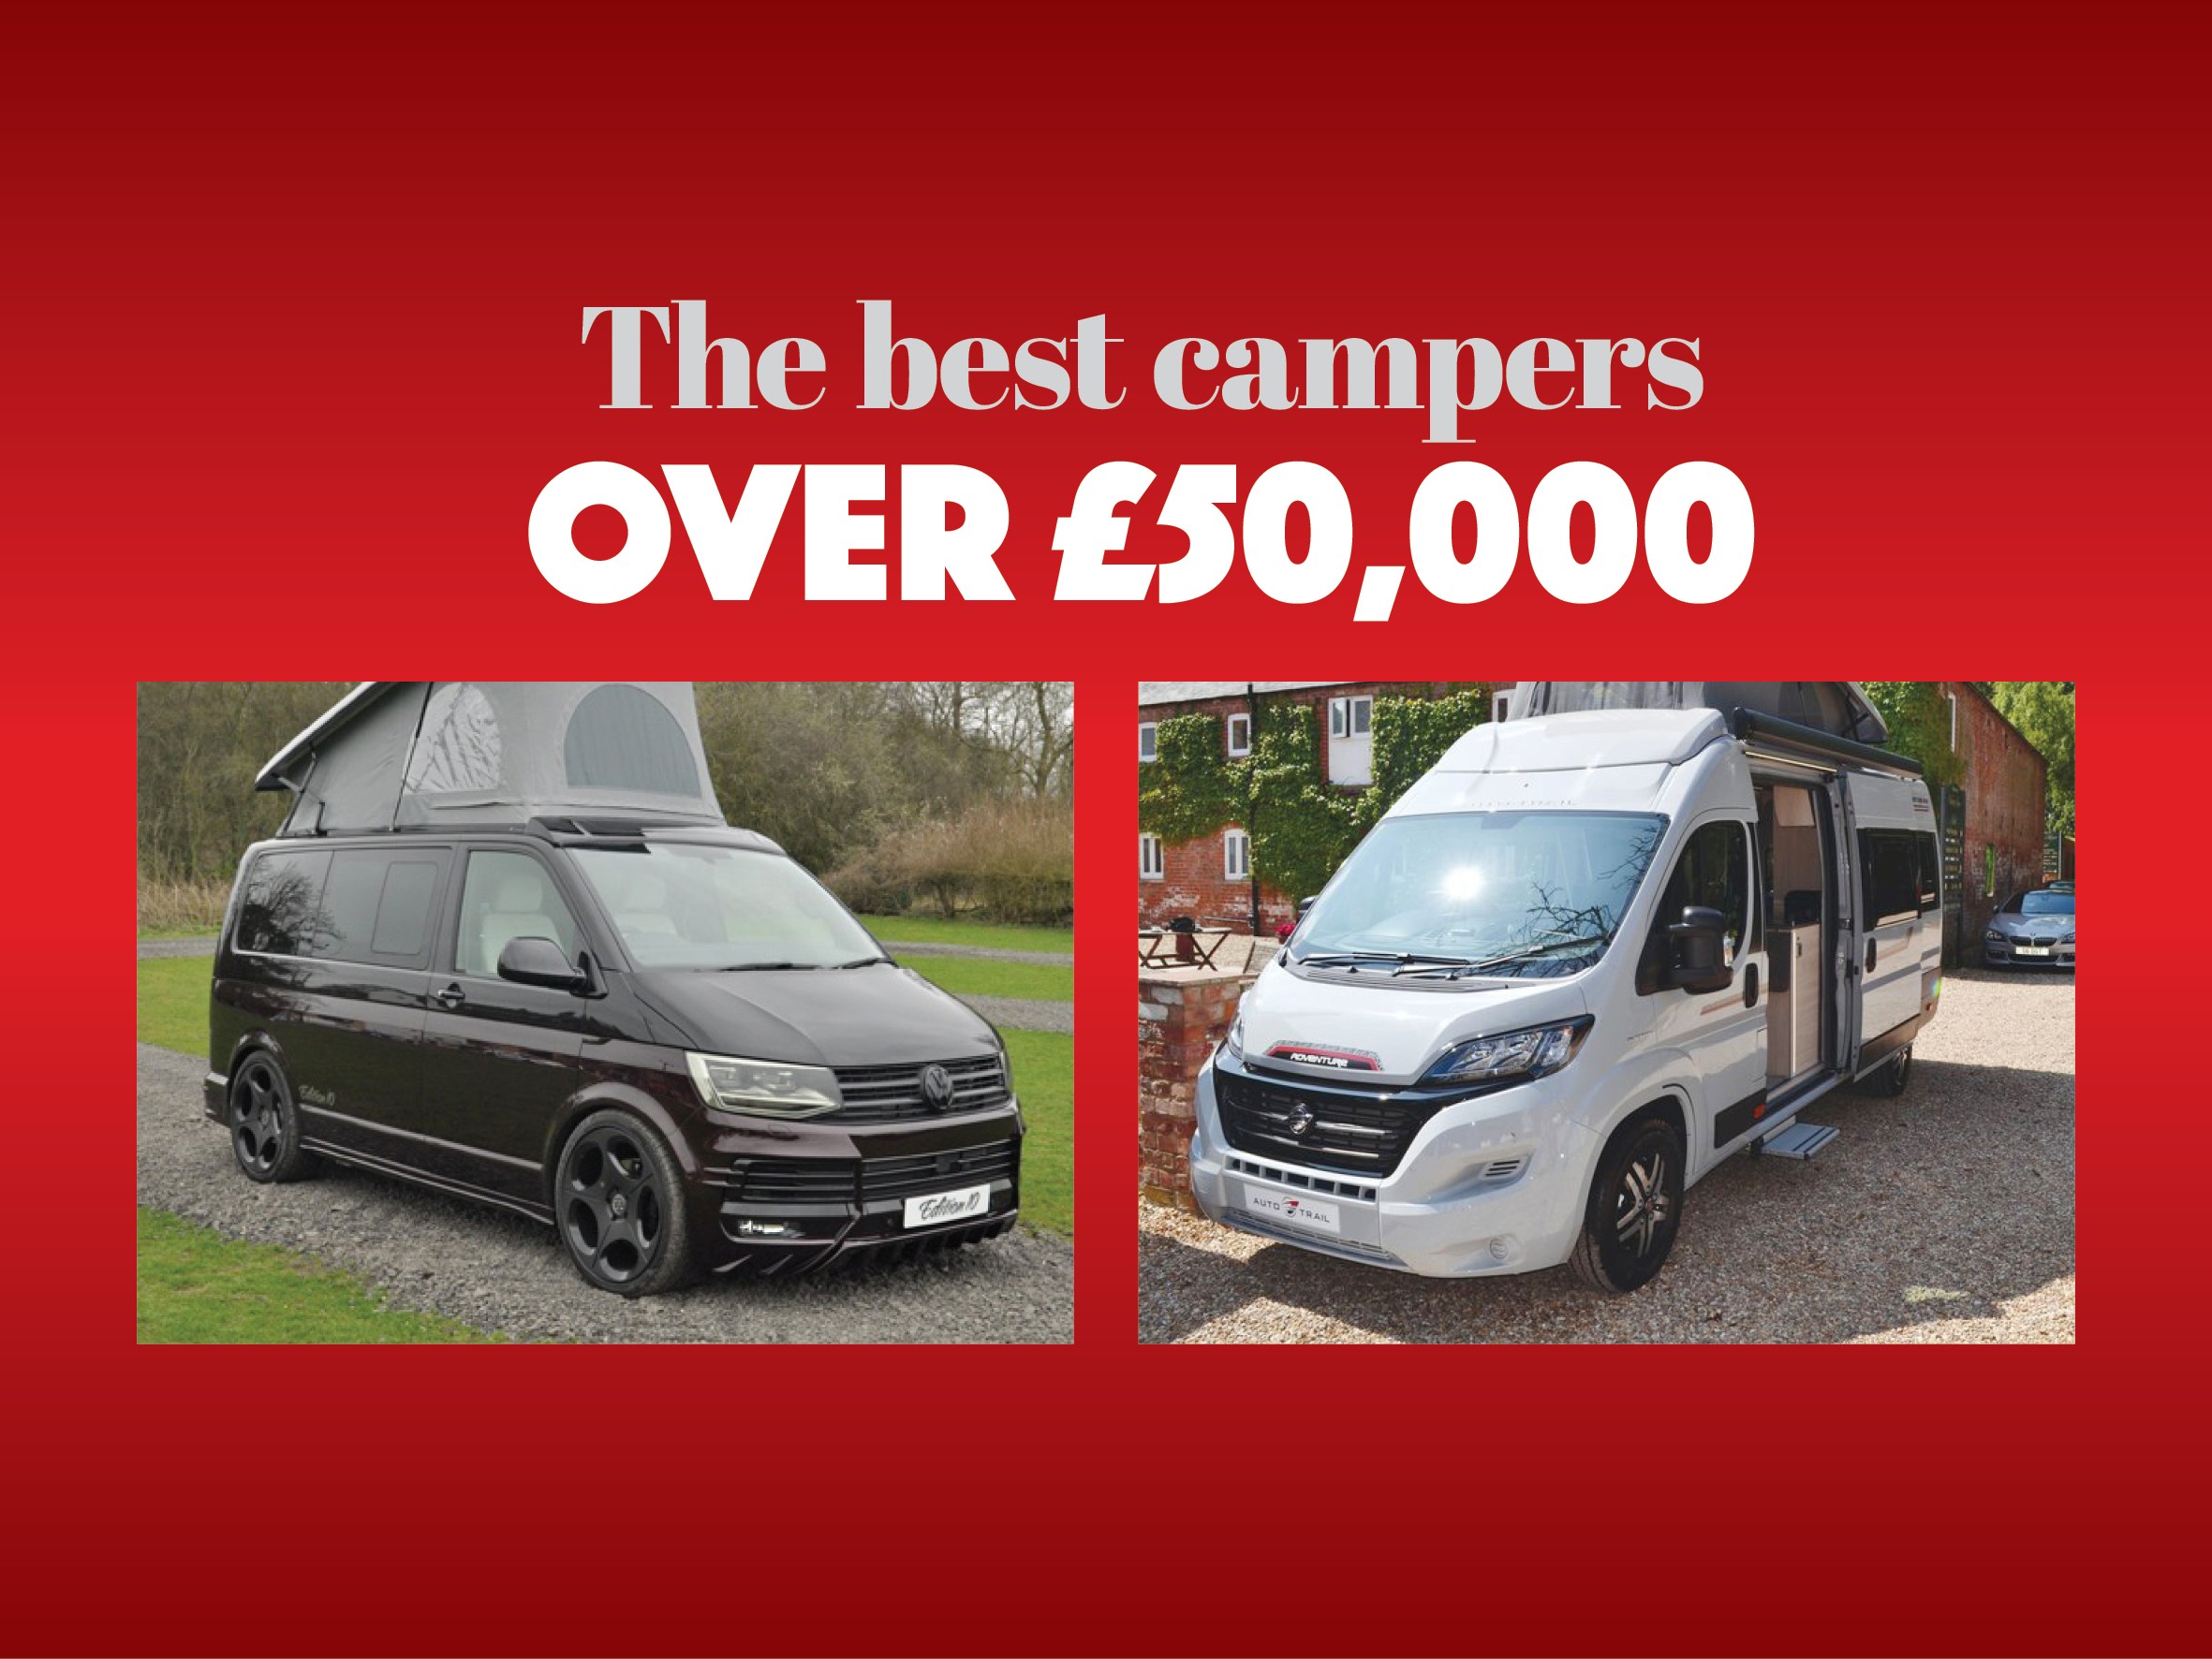 Best campervans over £50,000 - Practical Motorhome